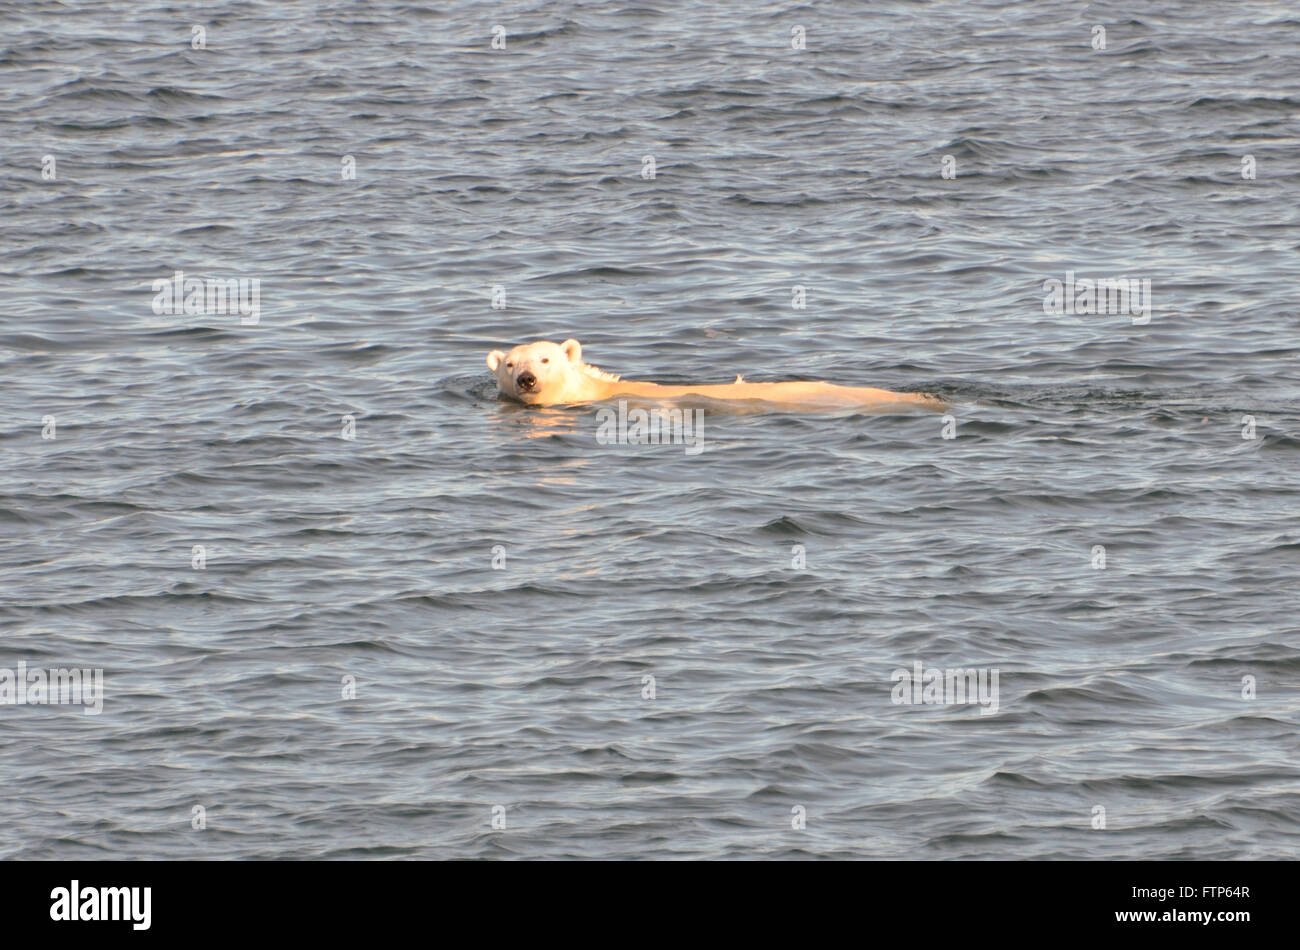 Un oso polar nadando en aguas abiertas en el Mar de Chukchi frente a las costas de Alaska. La drástica reducción del hielo marino ha dado lugar a largas sesiones de natación para los osos polares que puede nadar 200 millas cuando sea necesario. Foto de stock